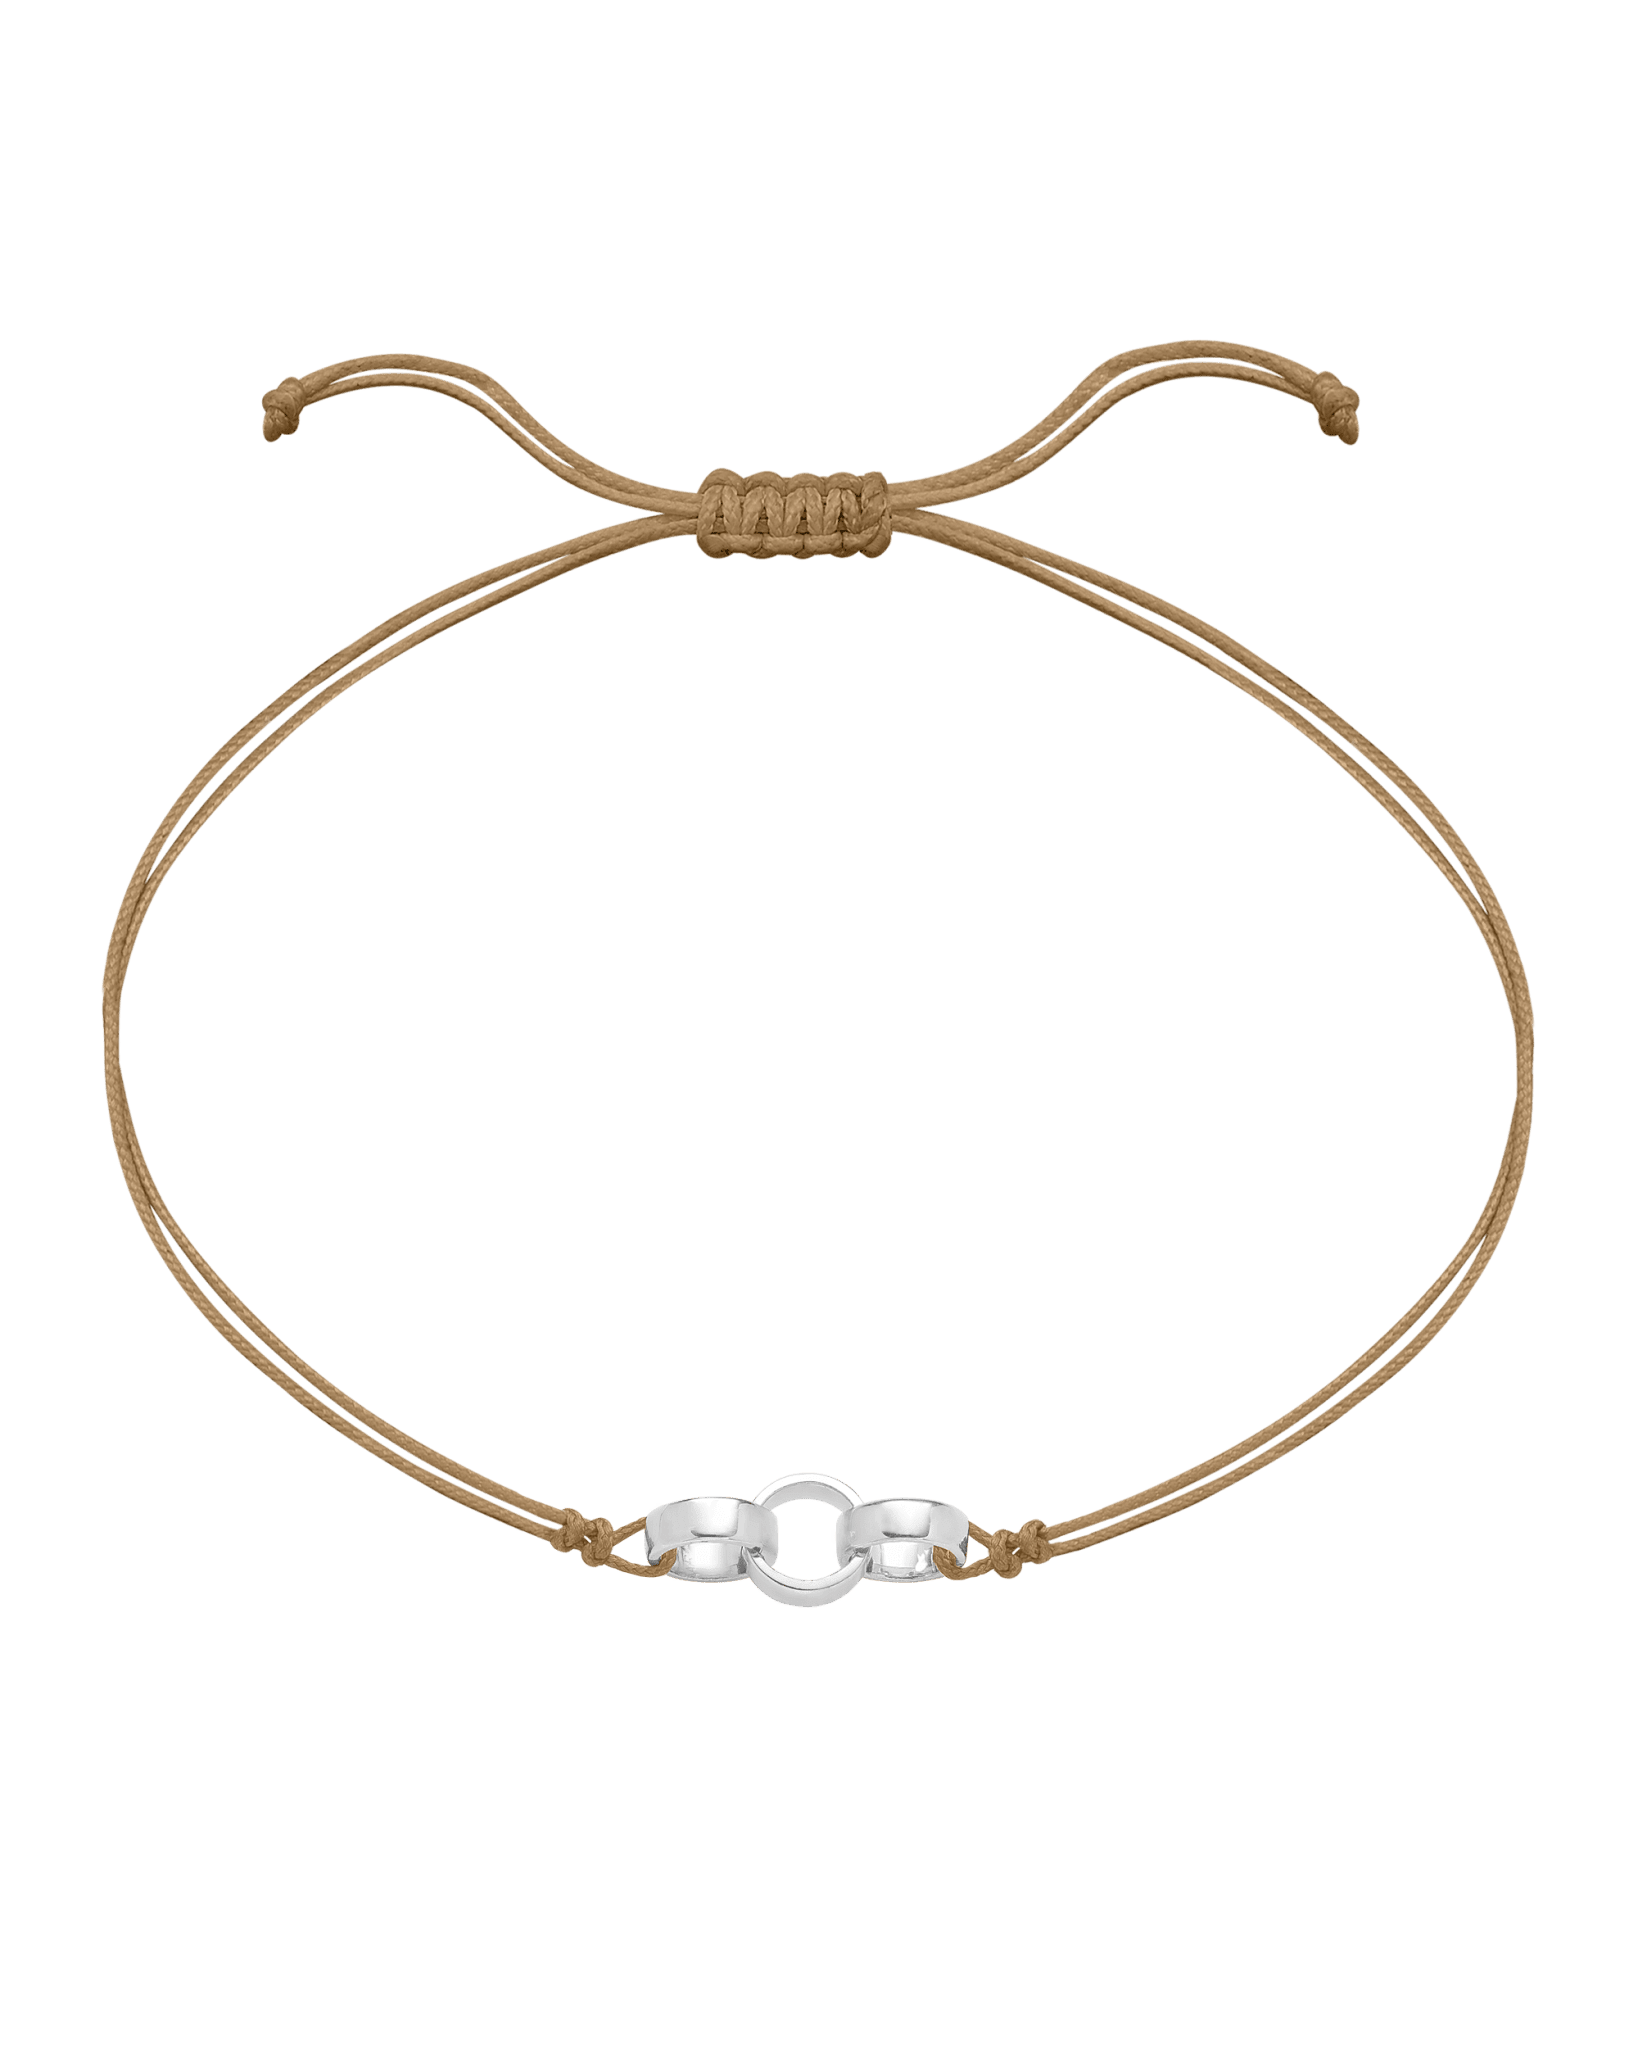 Engravable Links of Love - 925 Sterling Silver Bracelets magal-dev 3 Camel 